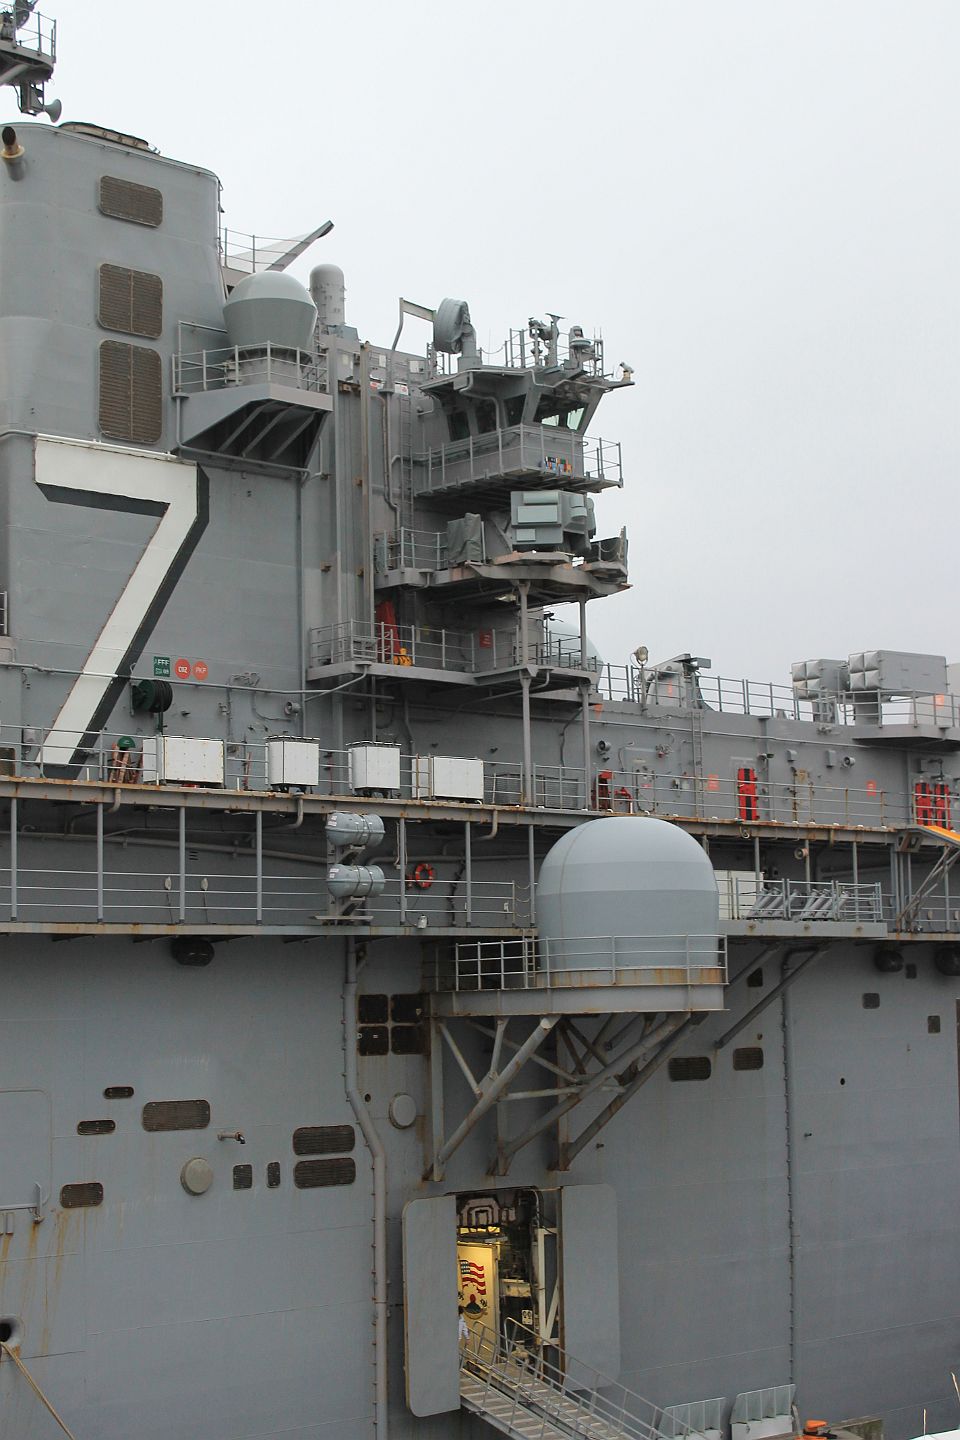 Photos of USS Iwo Jima (LHD-7) in Oslo